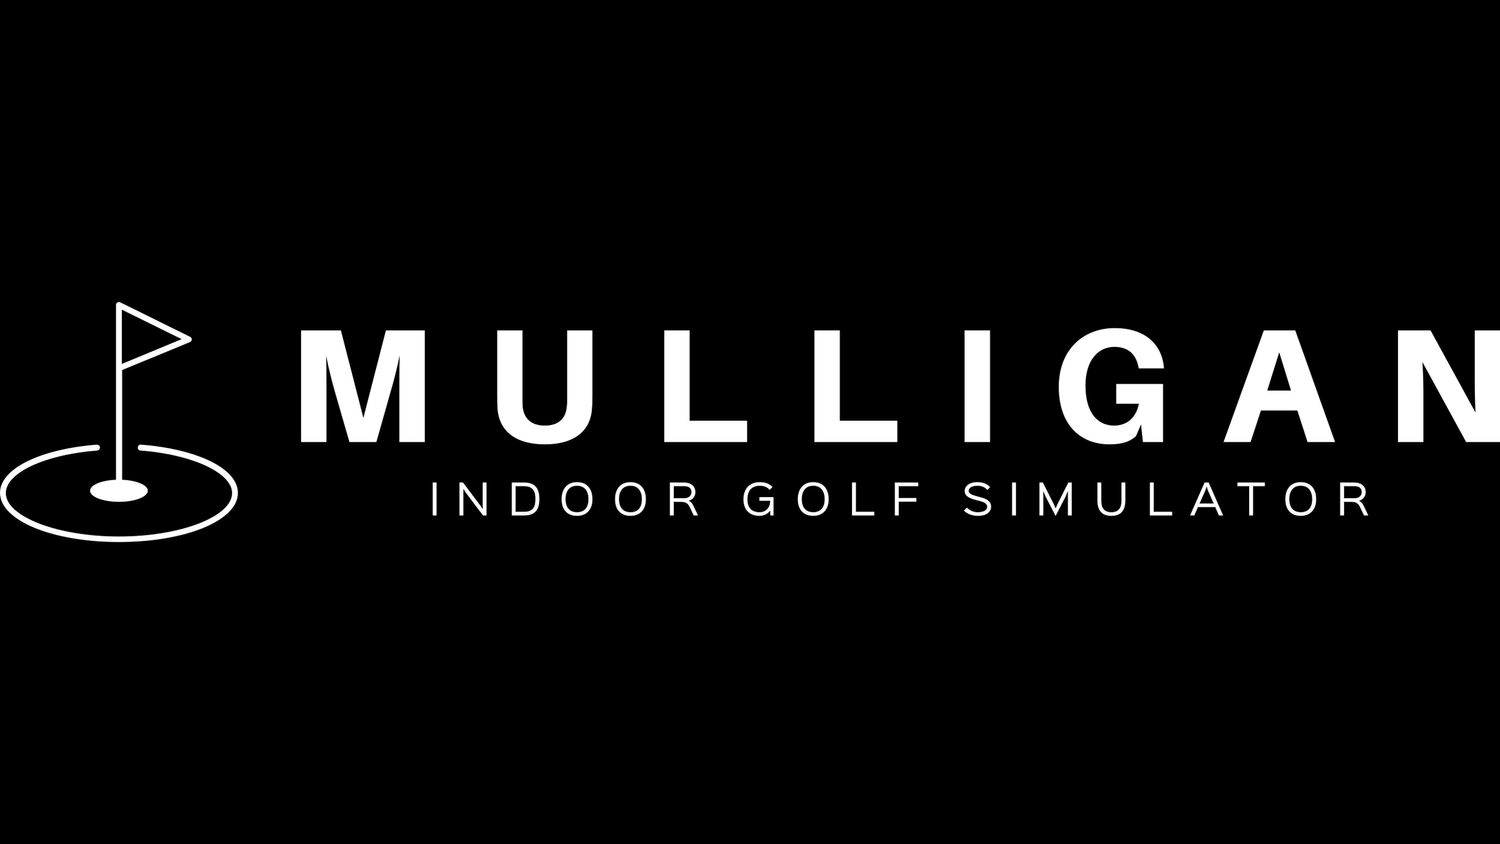 Mulligan Indoor Golf